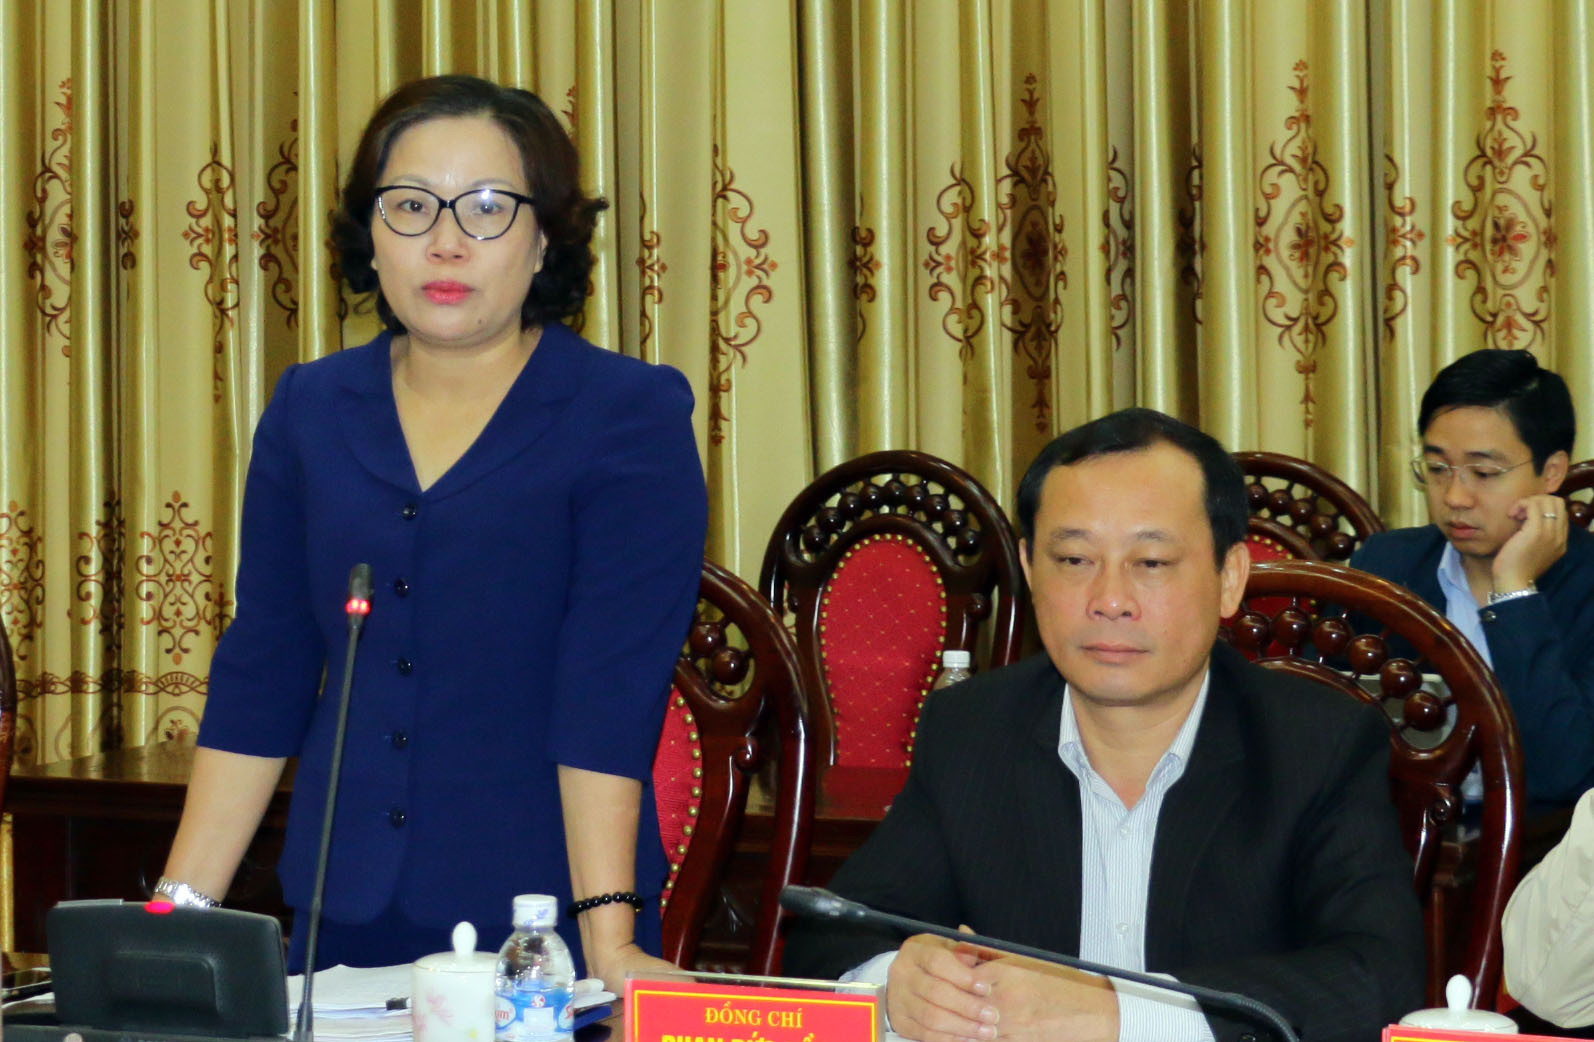 Đồng chí Nguyễn Thị Thu Hường - Trưởng ban Tuyên giáo Tỉnh ủy phát biểu tại cuộc họp. Ảnh: Mỹ Hà